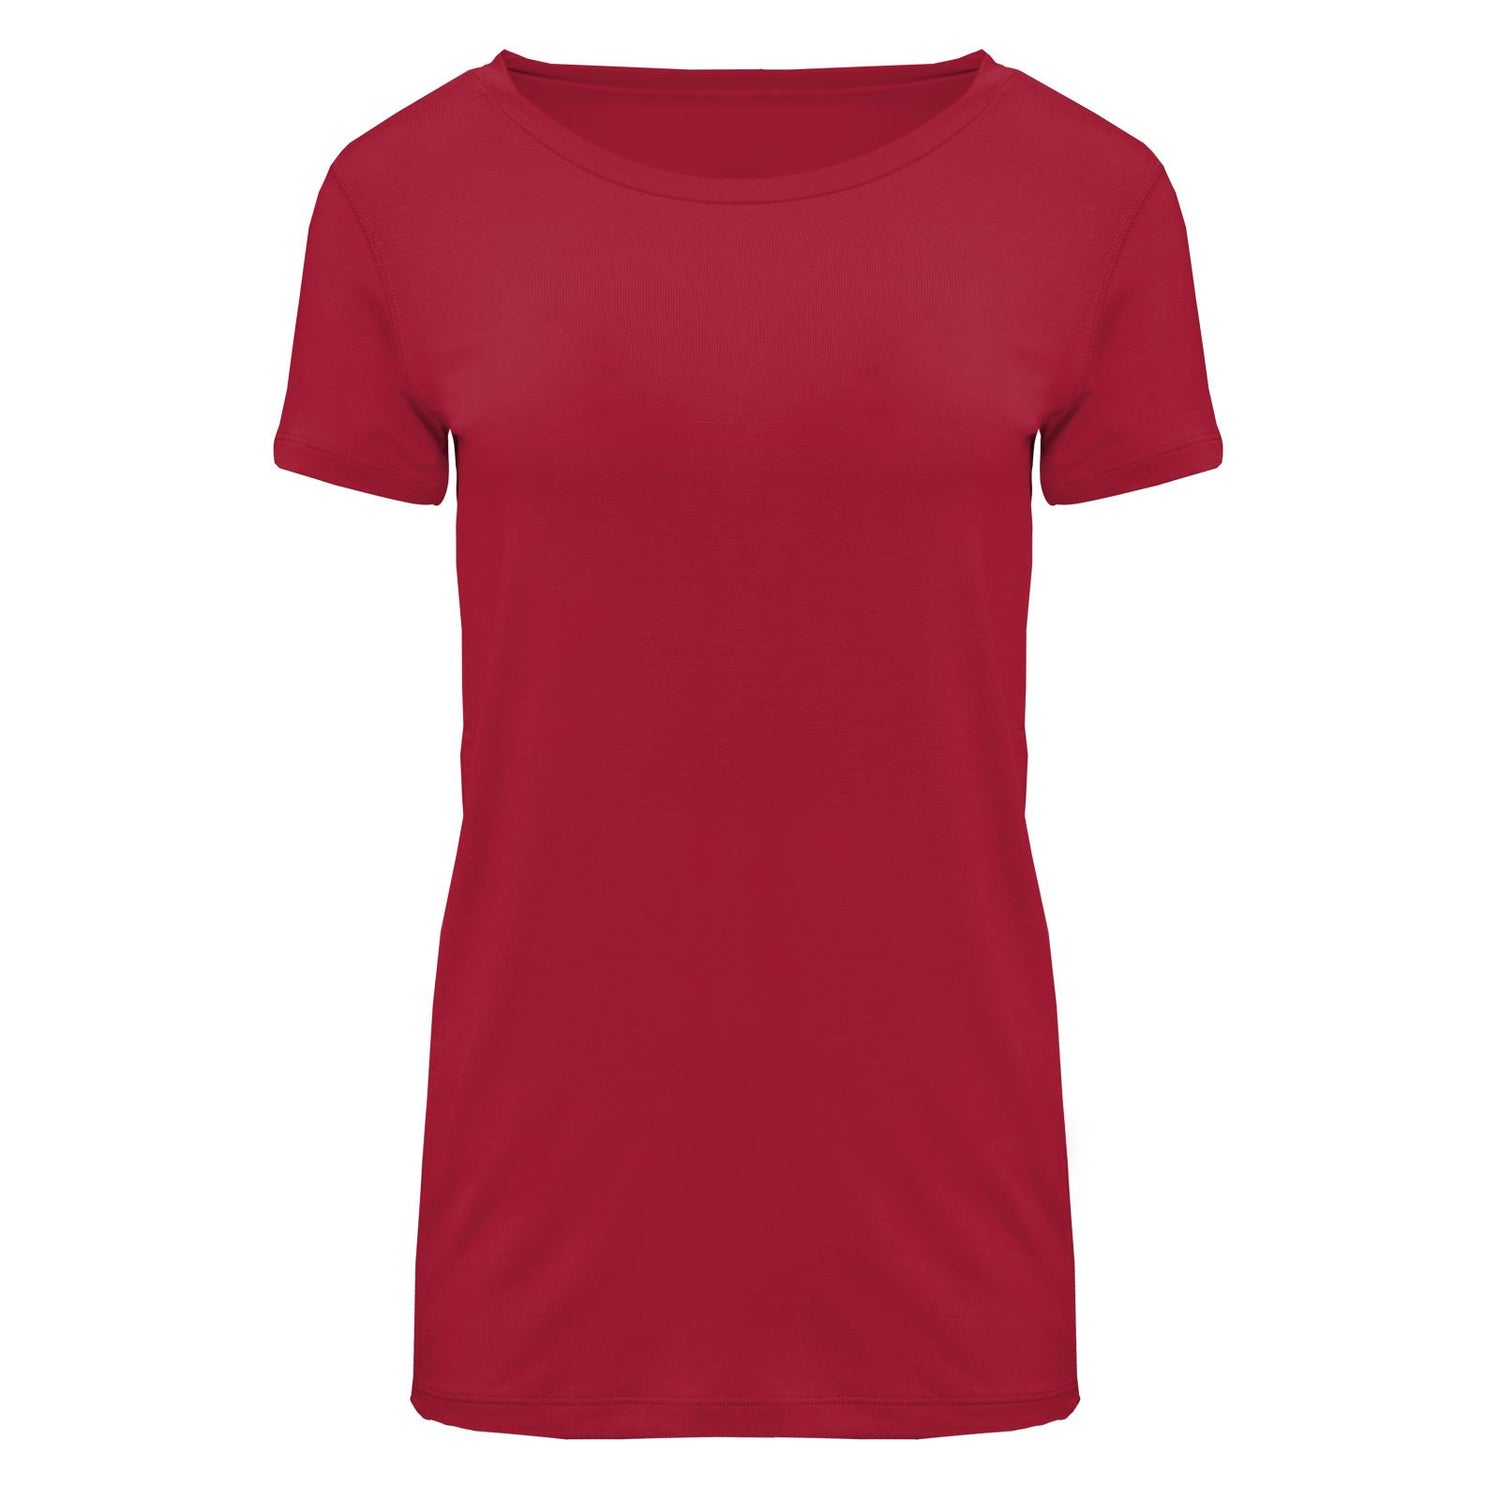 Women's Short Sleeve Loosey Goosey Tee in Crimson